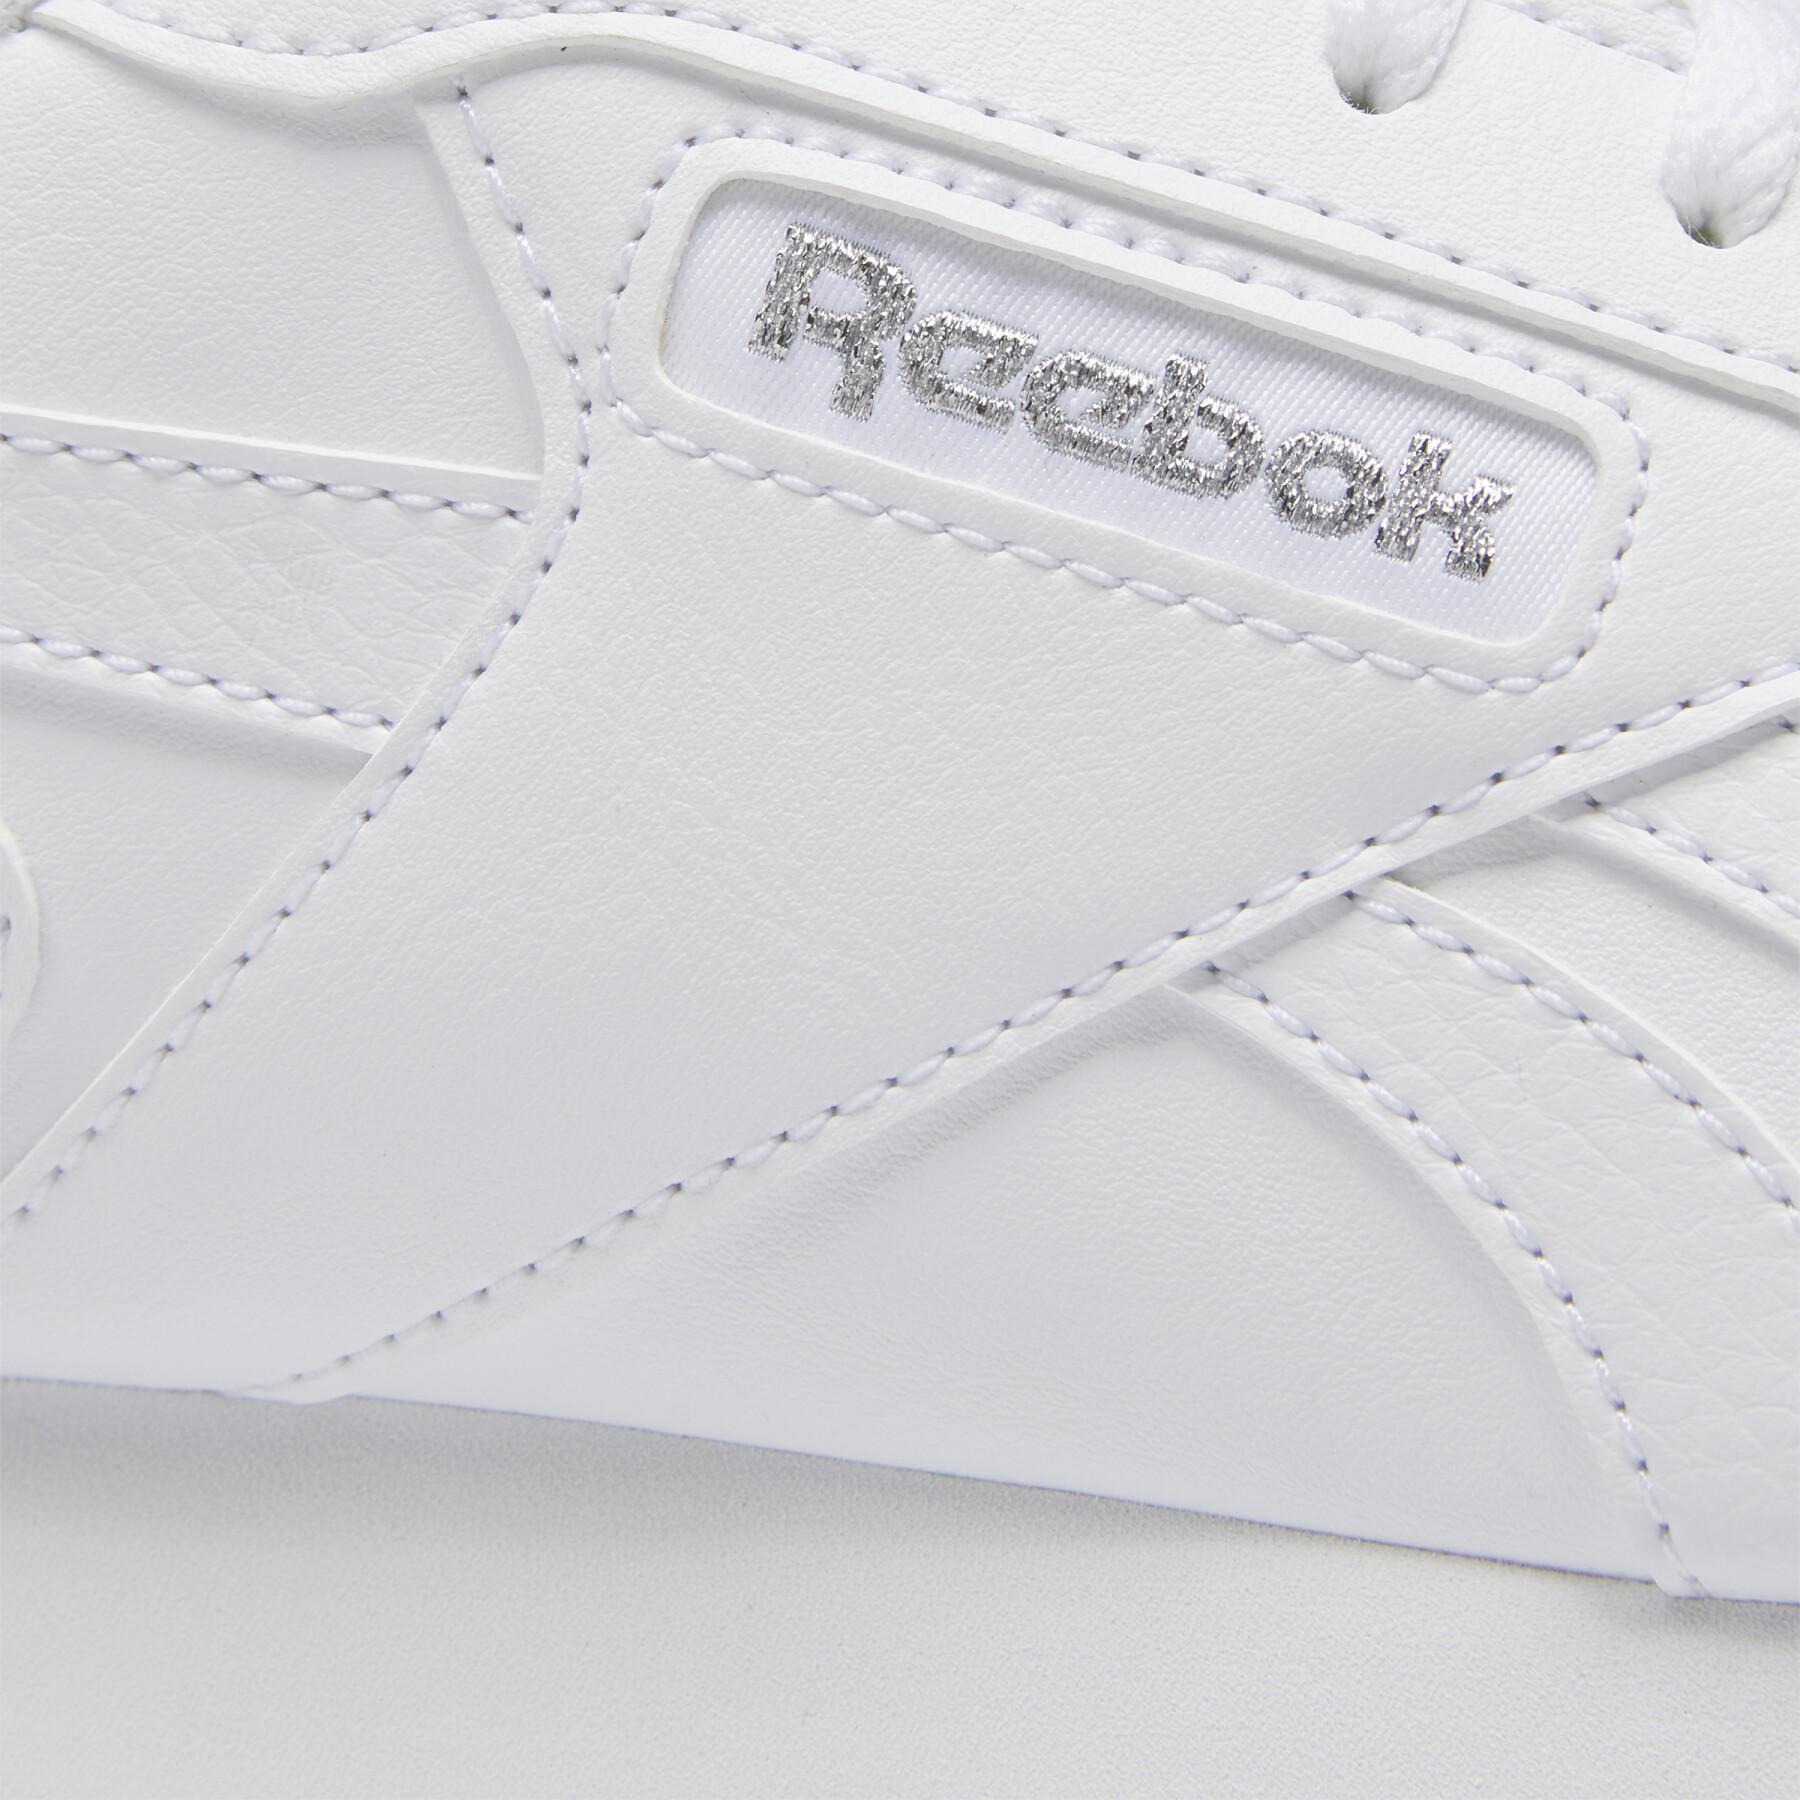 Women's sneakers Reebok Classics Glide Ripple Clip